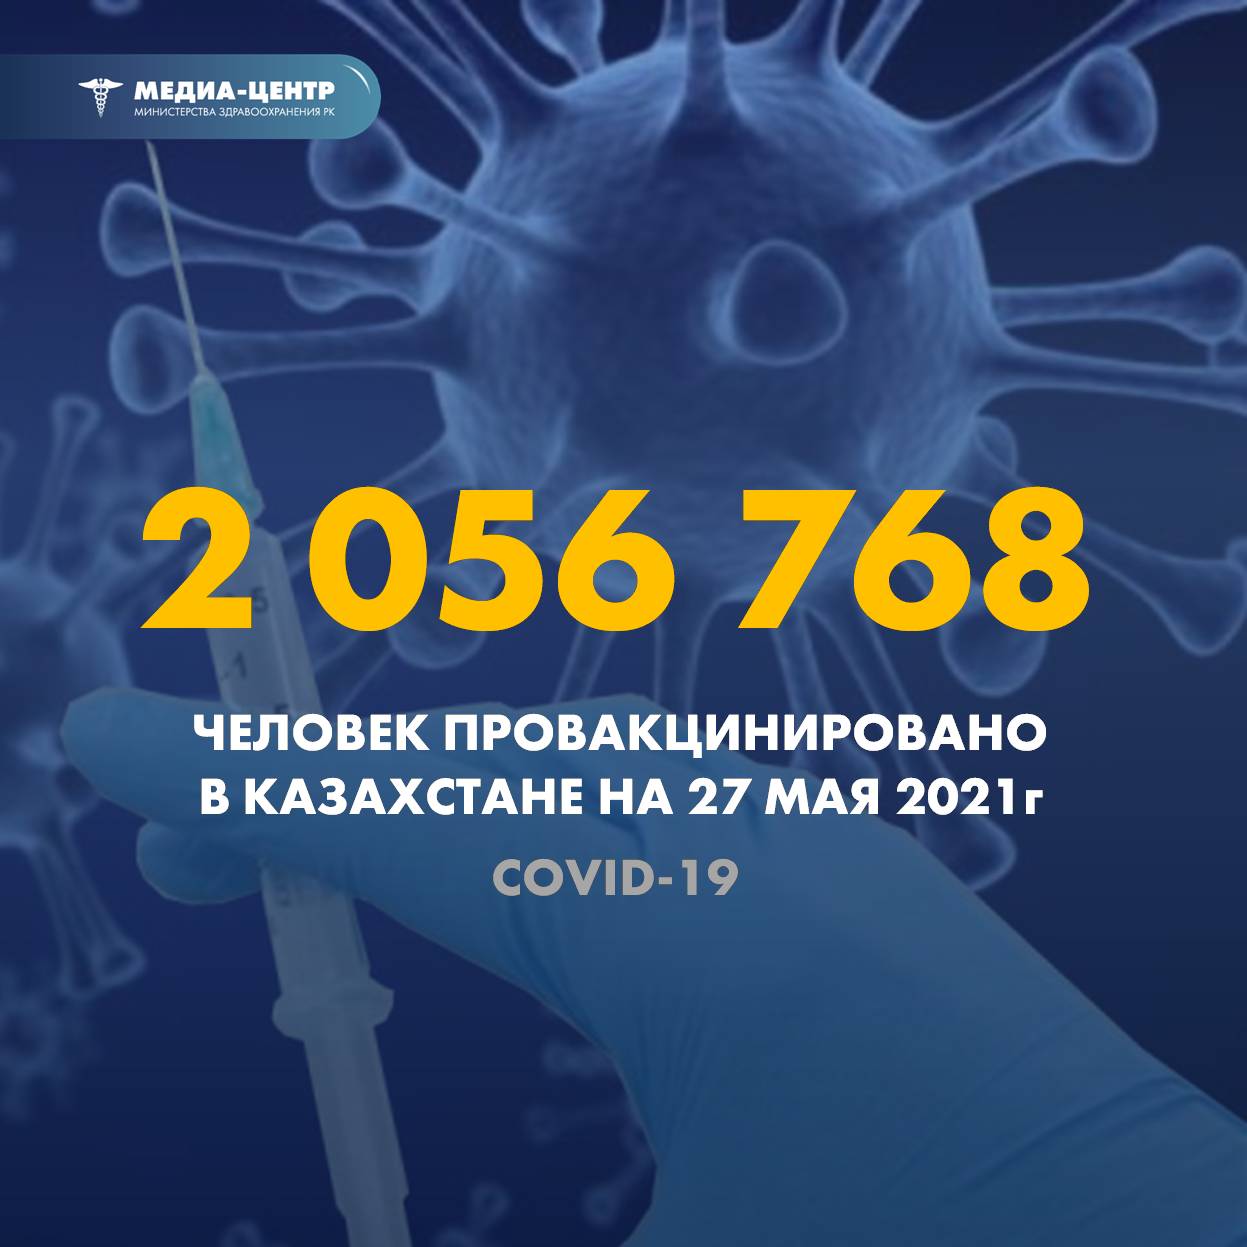 Количество зарегистрированных случаев КВИ- по РК и в разрезе регионов за сутки (25.05.2021г.)